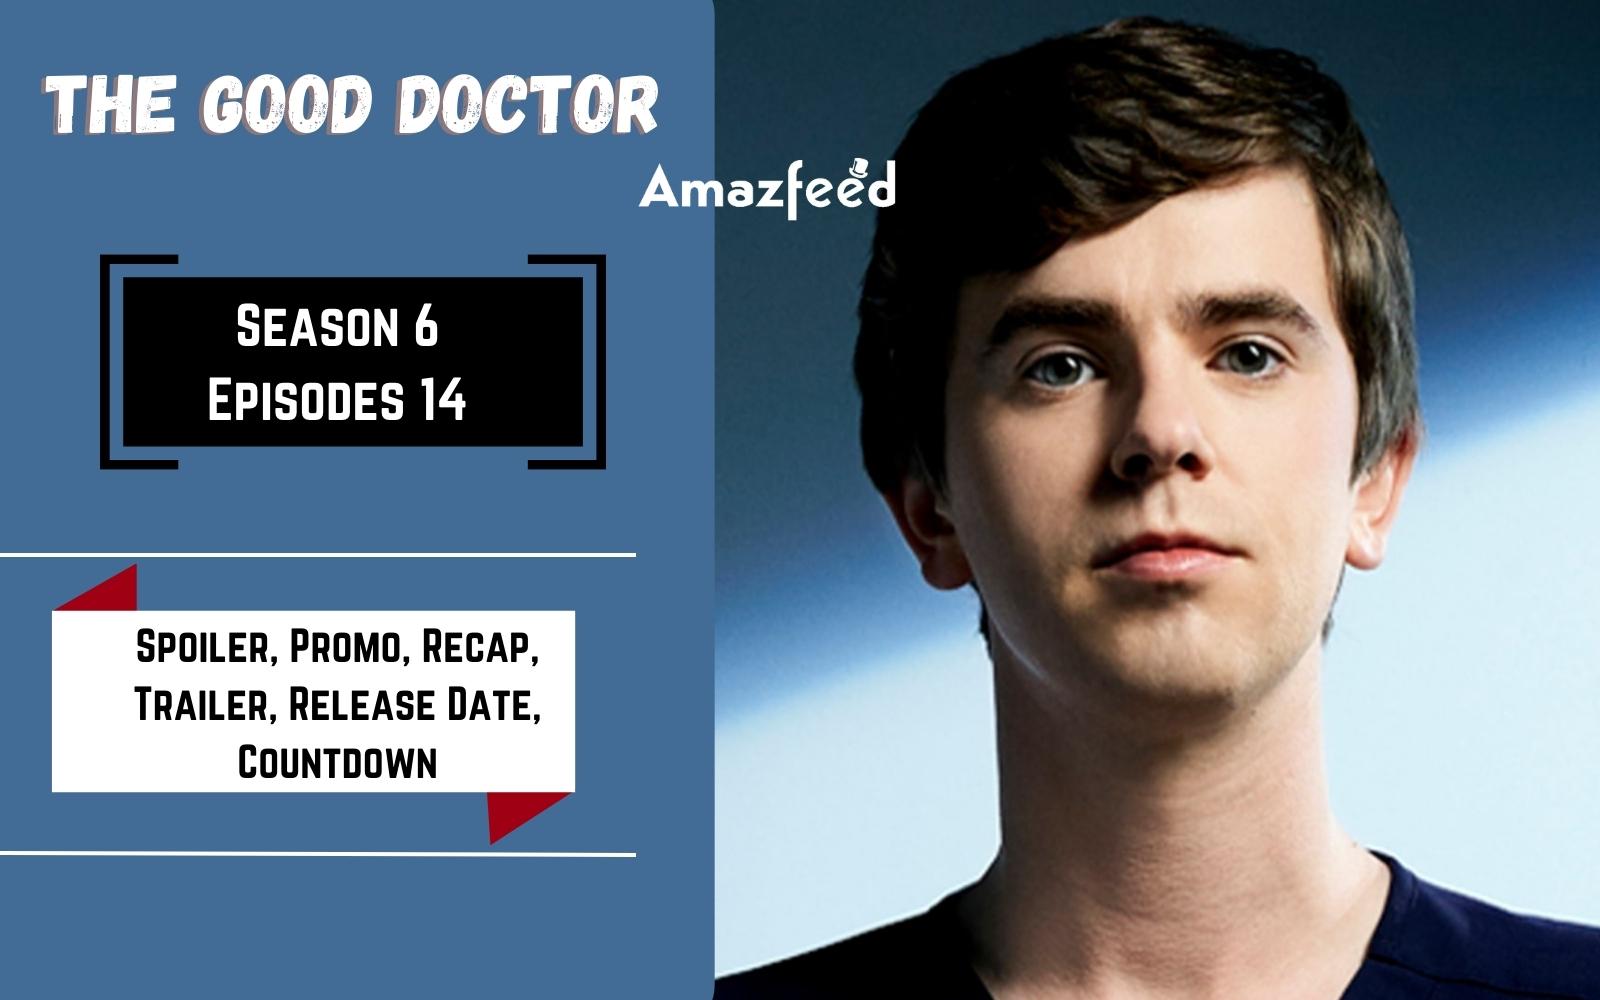 The Good Doctor Season 6 Episode 14